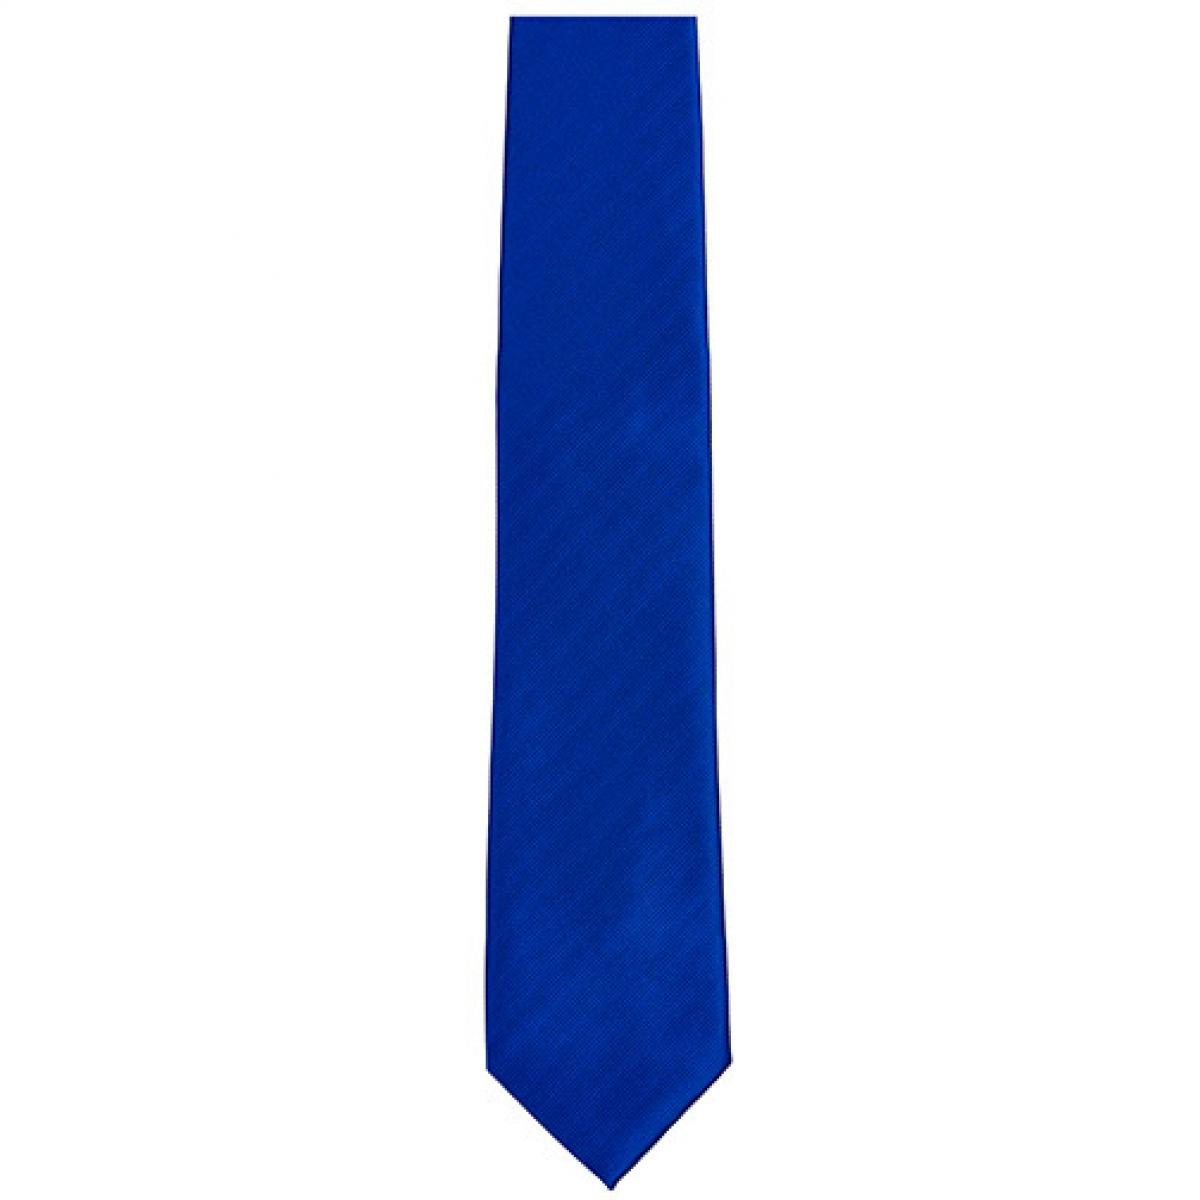 Hersteller: TYTO Herstellernummer: TT902 Artikelbezeichnung: Twill Tie / 144 x 8,5cm Farbe: Royal